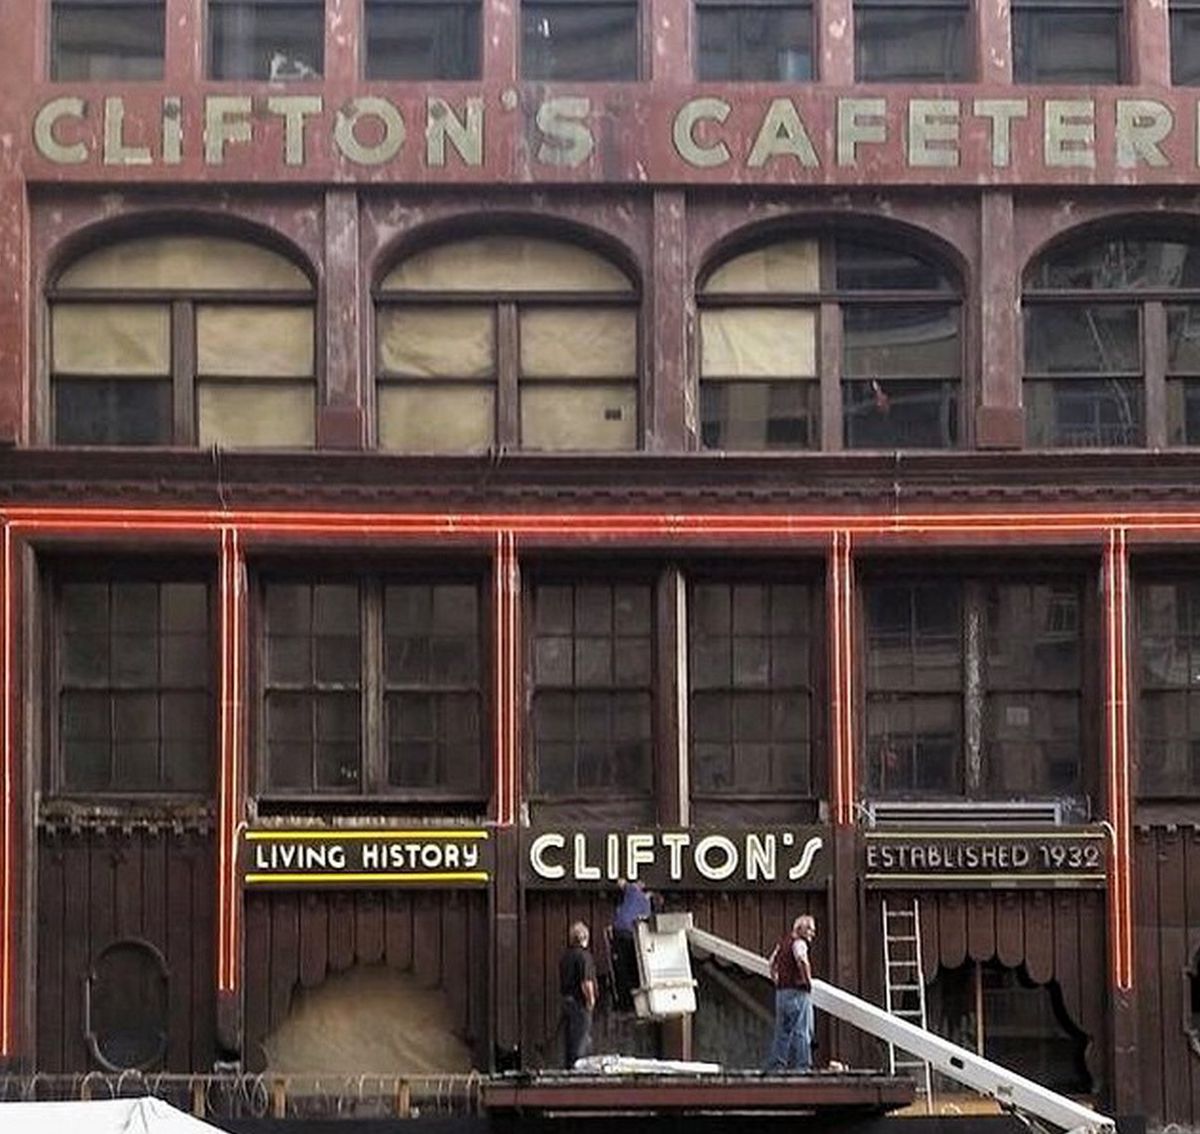 Clifton's